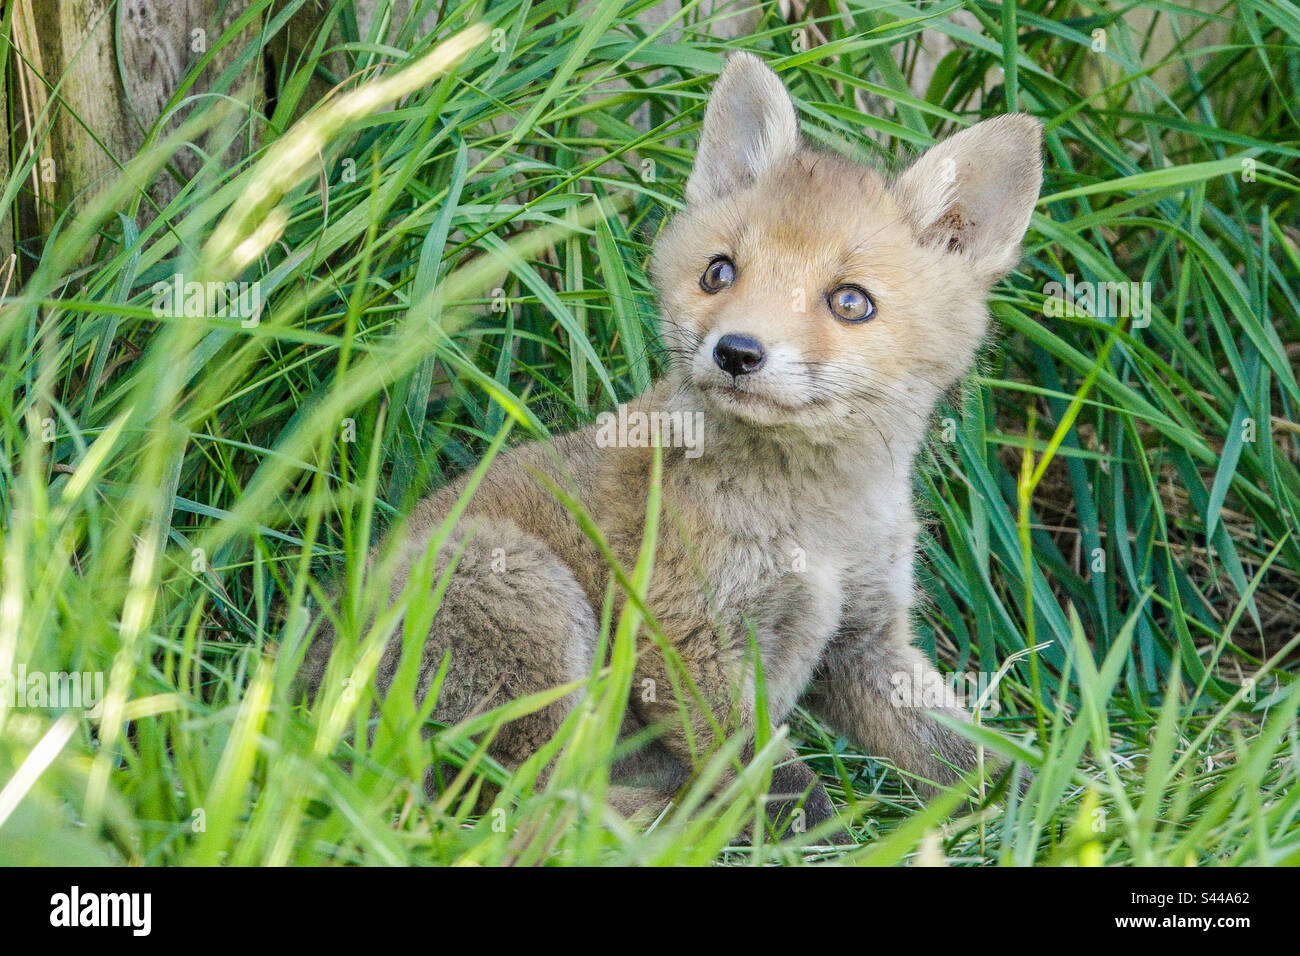 City foxes - Un jeune renard cub joue en herbe dans un jardin de banlieue de Clarkston, en Écosse Banque D'Images